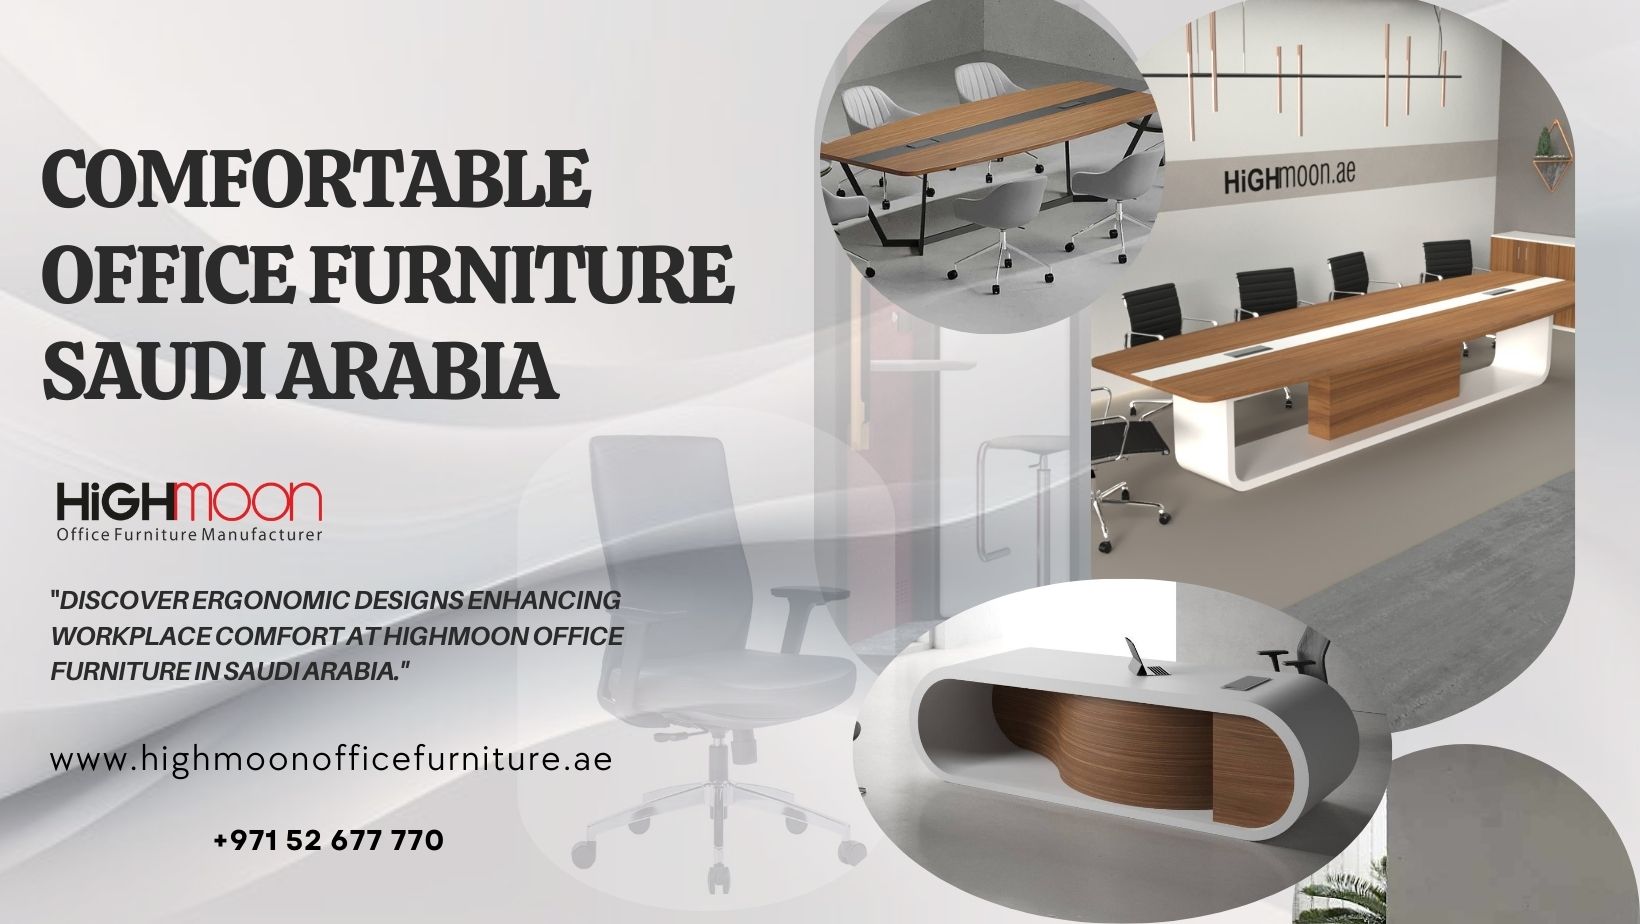 Comfortable Office Furniture in Saudi Arabia